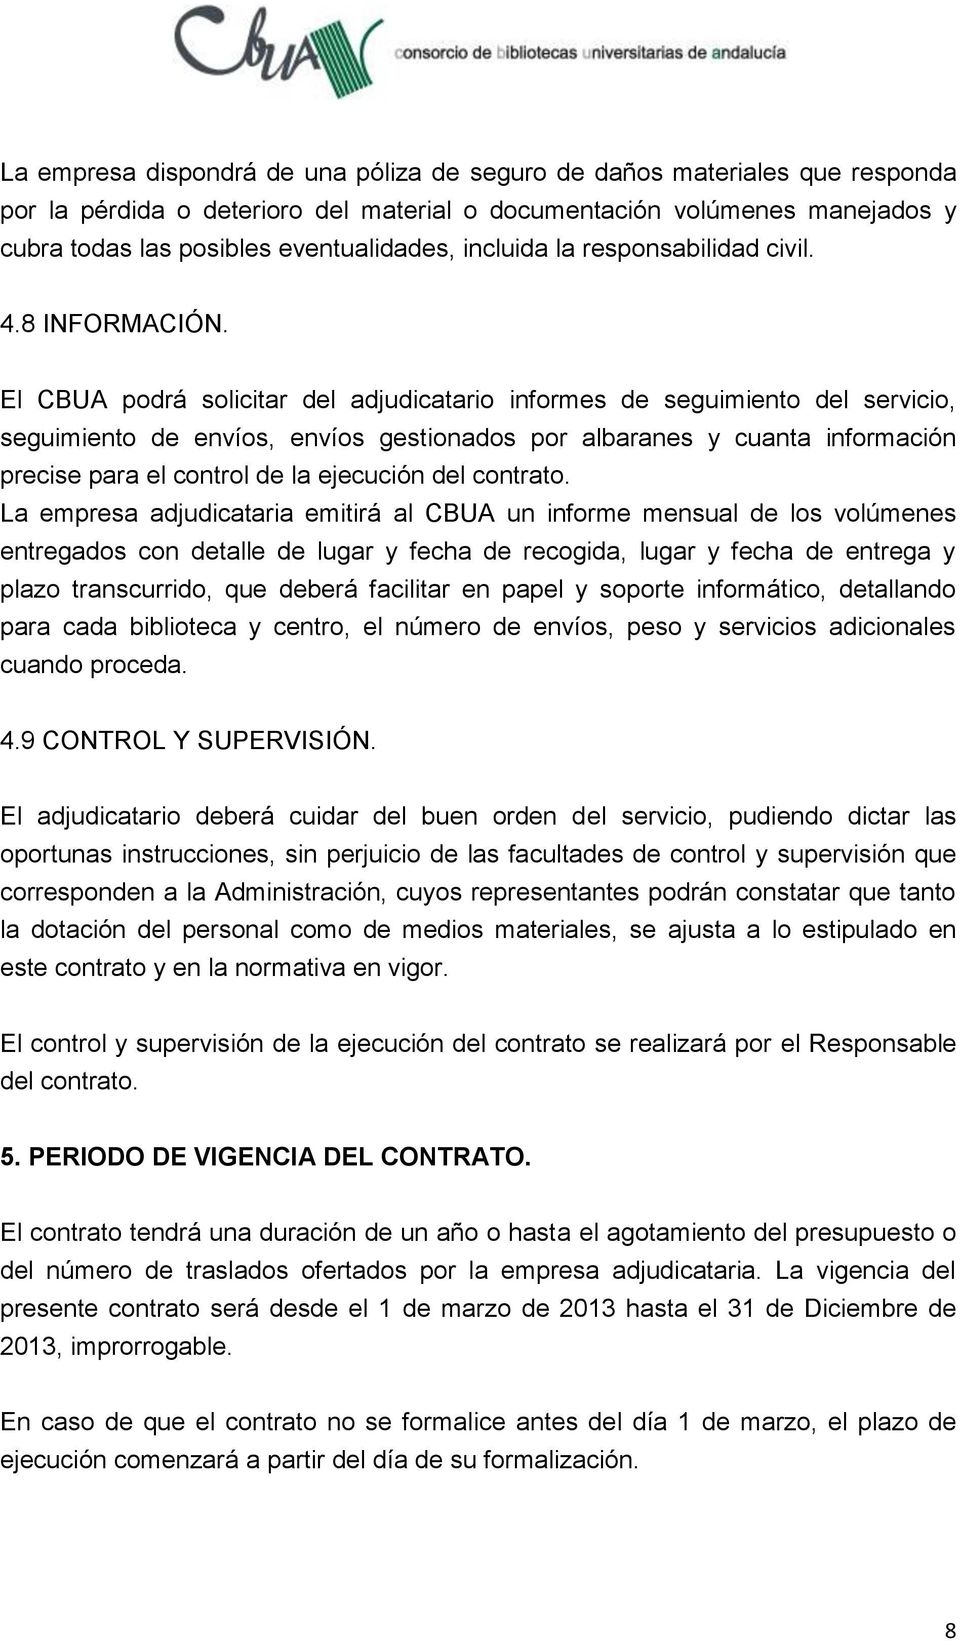 El CBUA podrá solicitar del adjudicatario informes de seguimiento del servicio, seguimiento de envíos, envíos gestionados por albaranes y cuanta información precise para el control de la ejecución